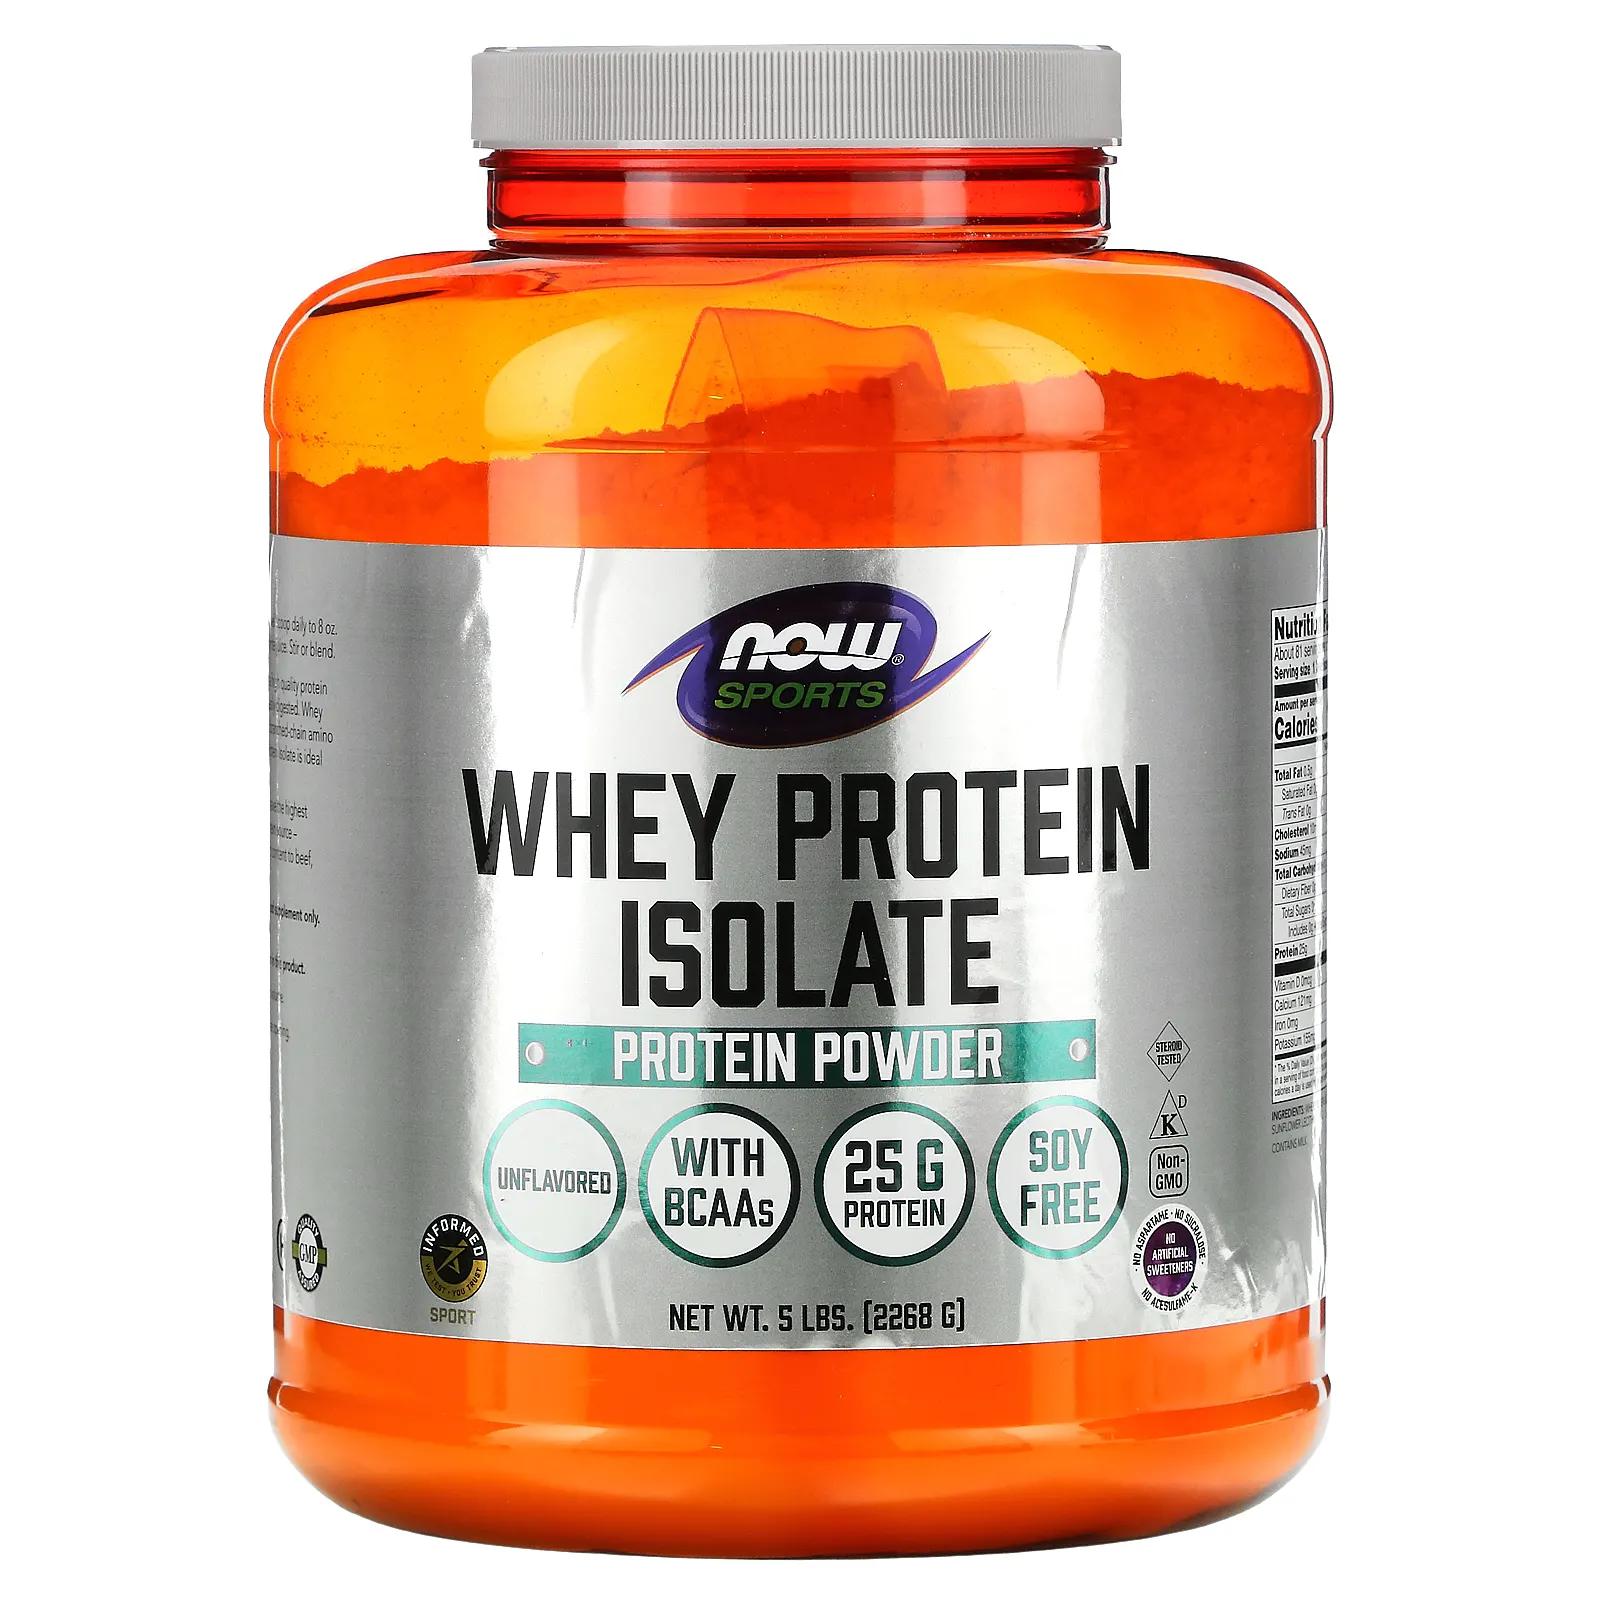 Now Foods Изолят сывороточного протеина для спортсменов с натуральным вкусом 5 фунтов (2268 г) now foods sports изолят сывороточного протеина со вкусом кремового шоколада 2268 г 5 фунта